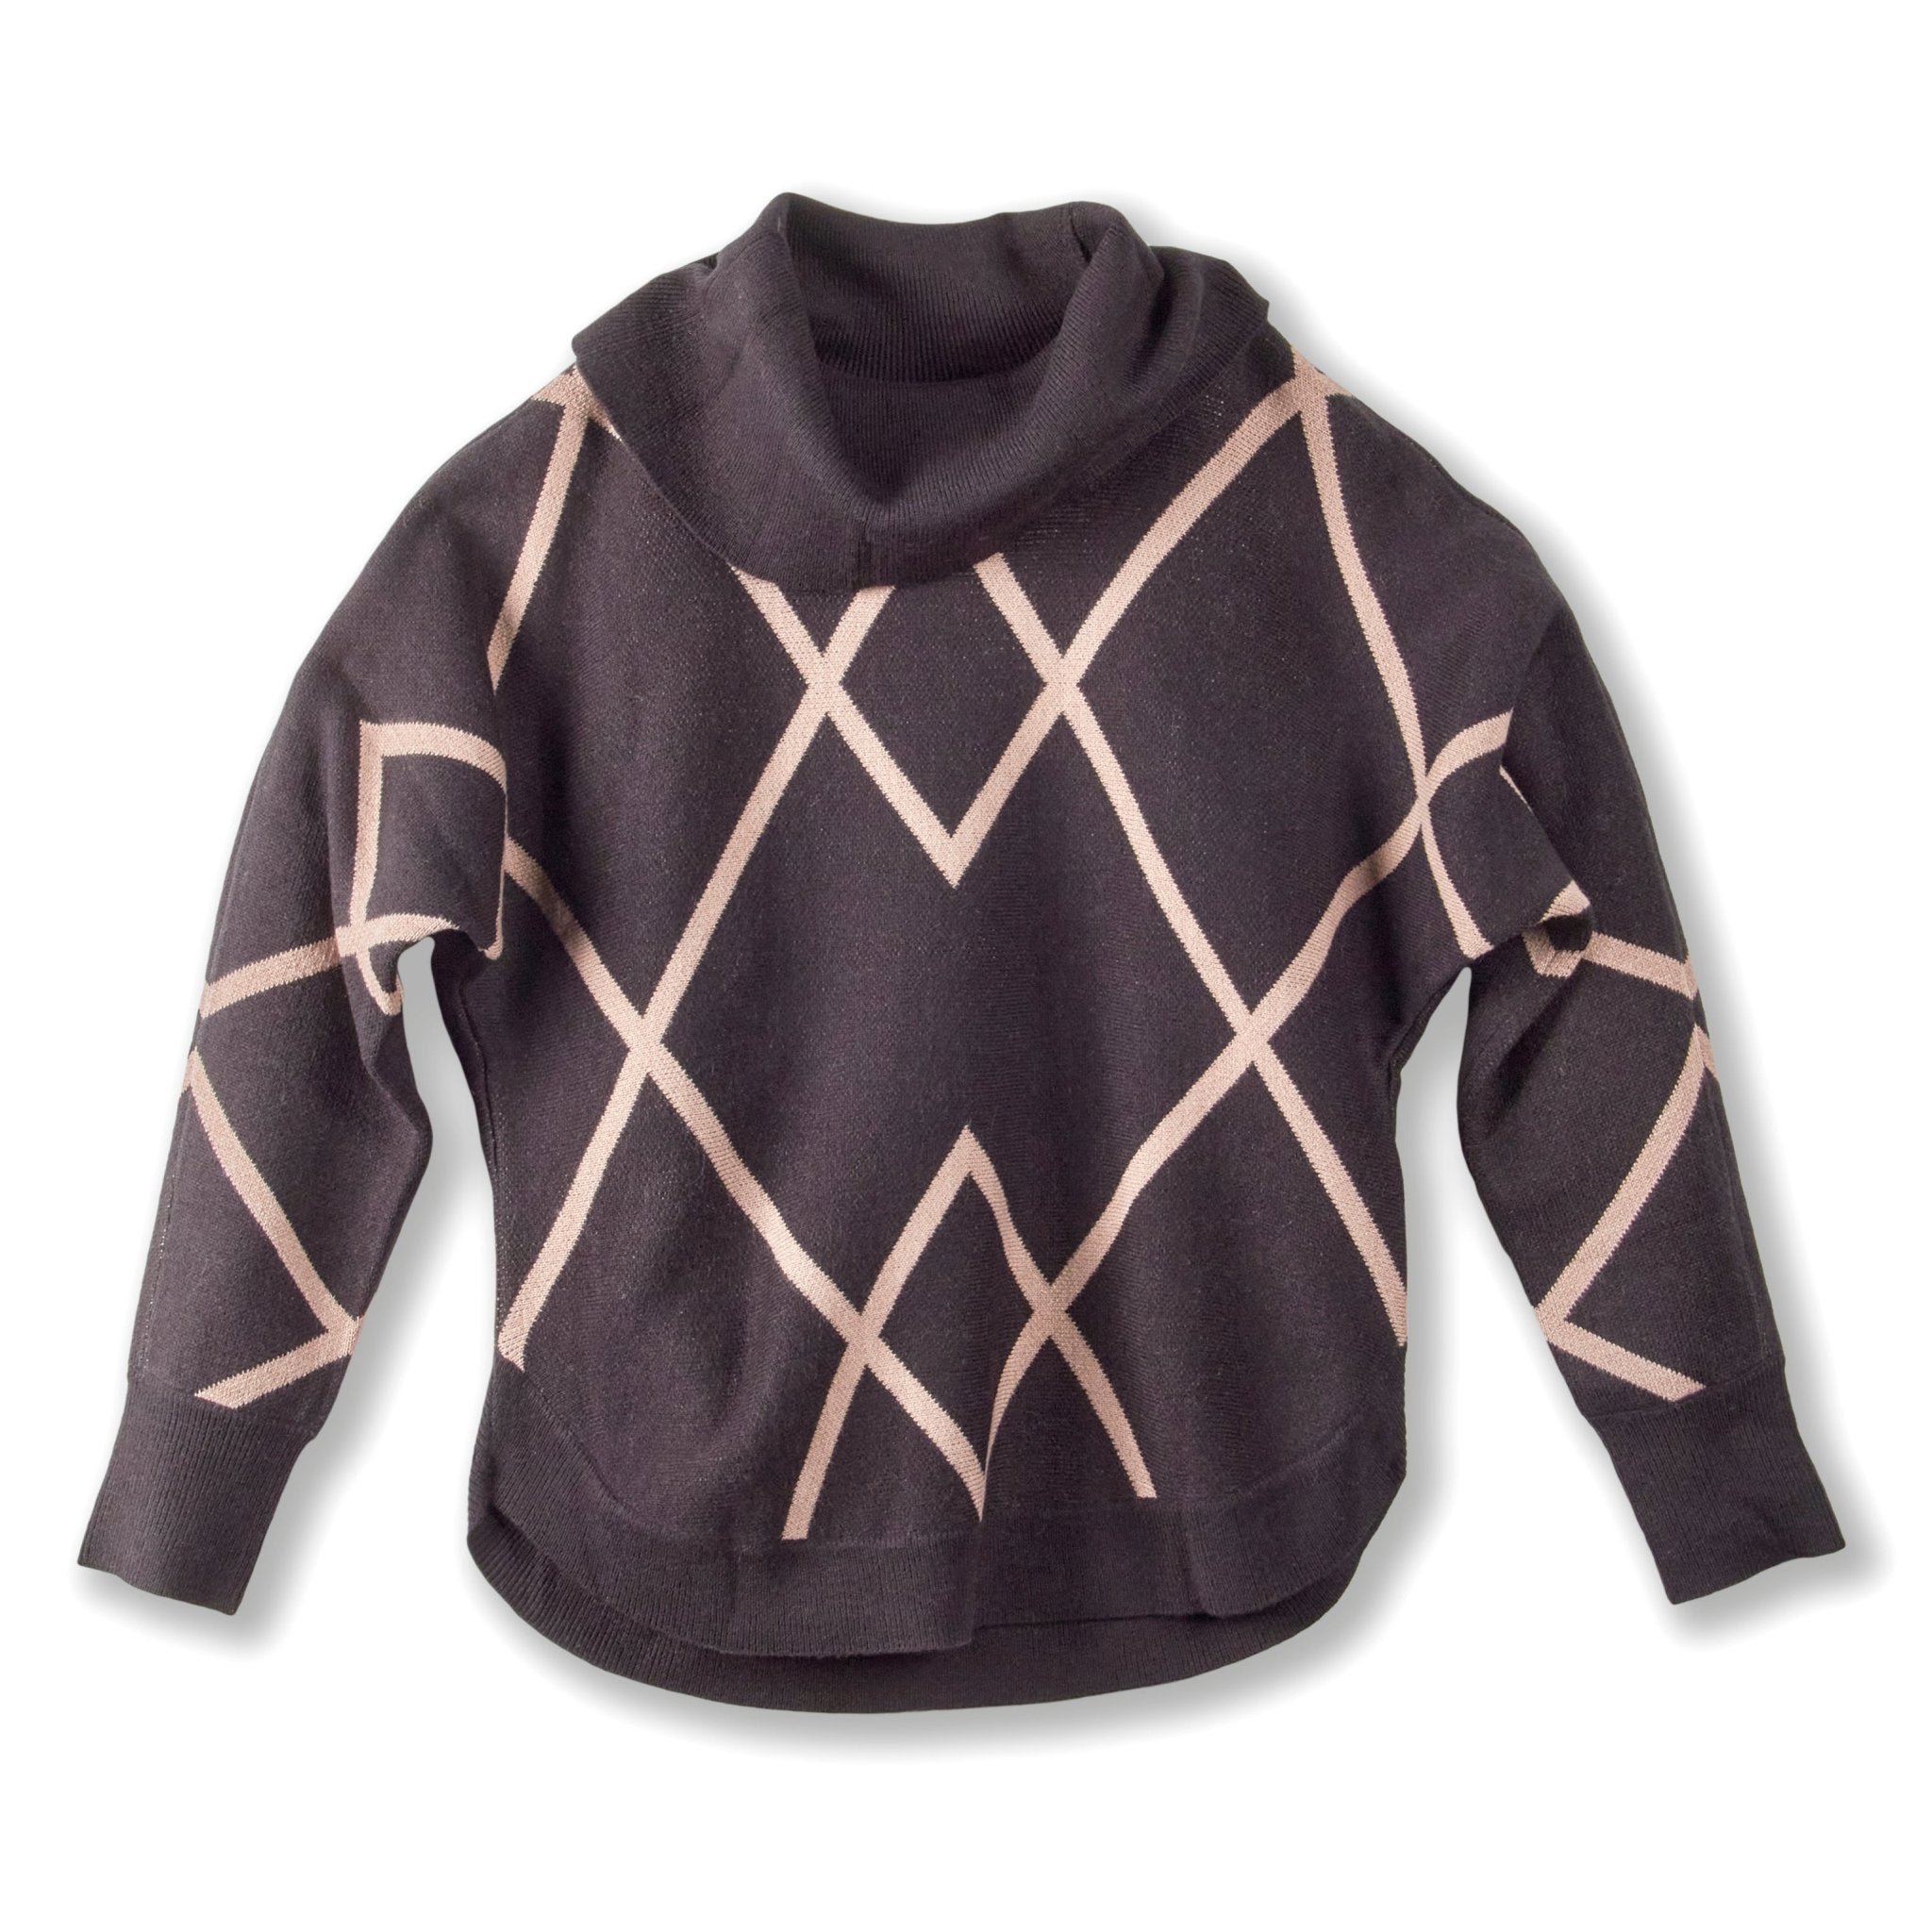 Women's Sweaters For Best Price - Dressbarn